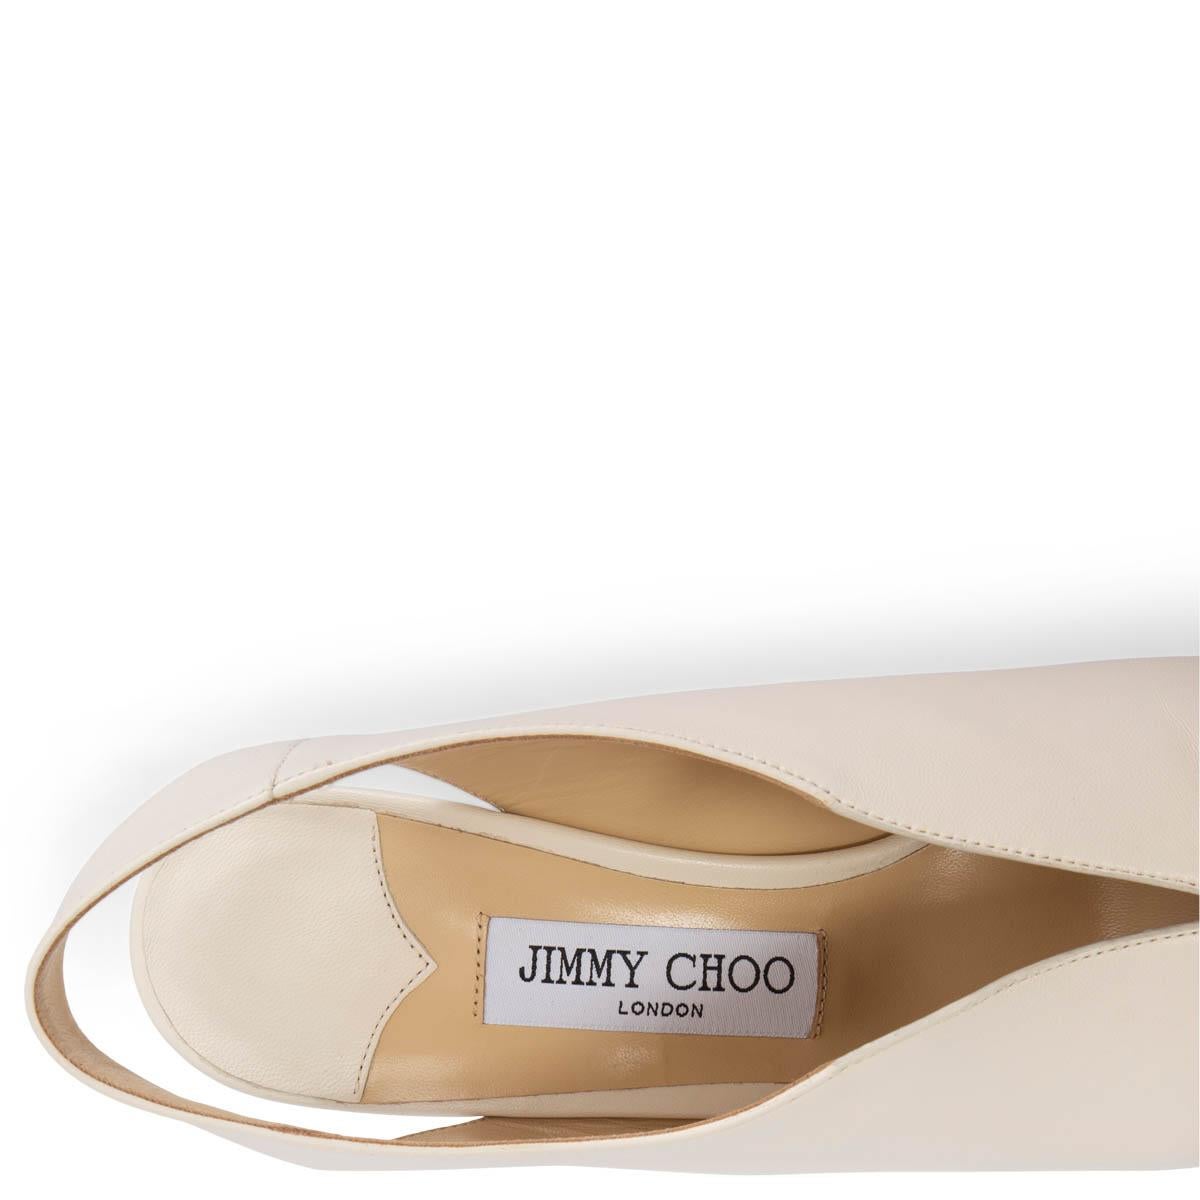 JIMMY CHOO ivory leather SAISE 85 Pointed Toe Slingbacks Pumps Shoes 39 For Sale 2